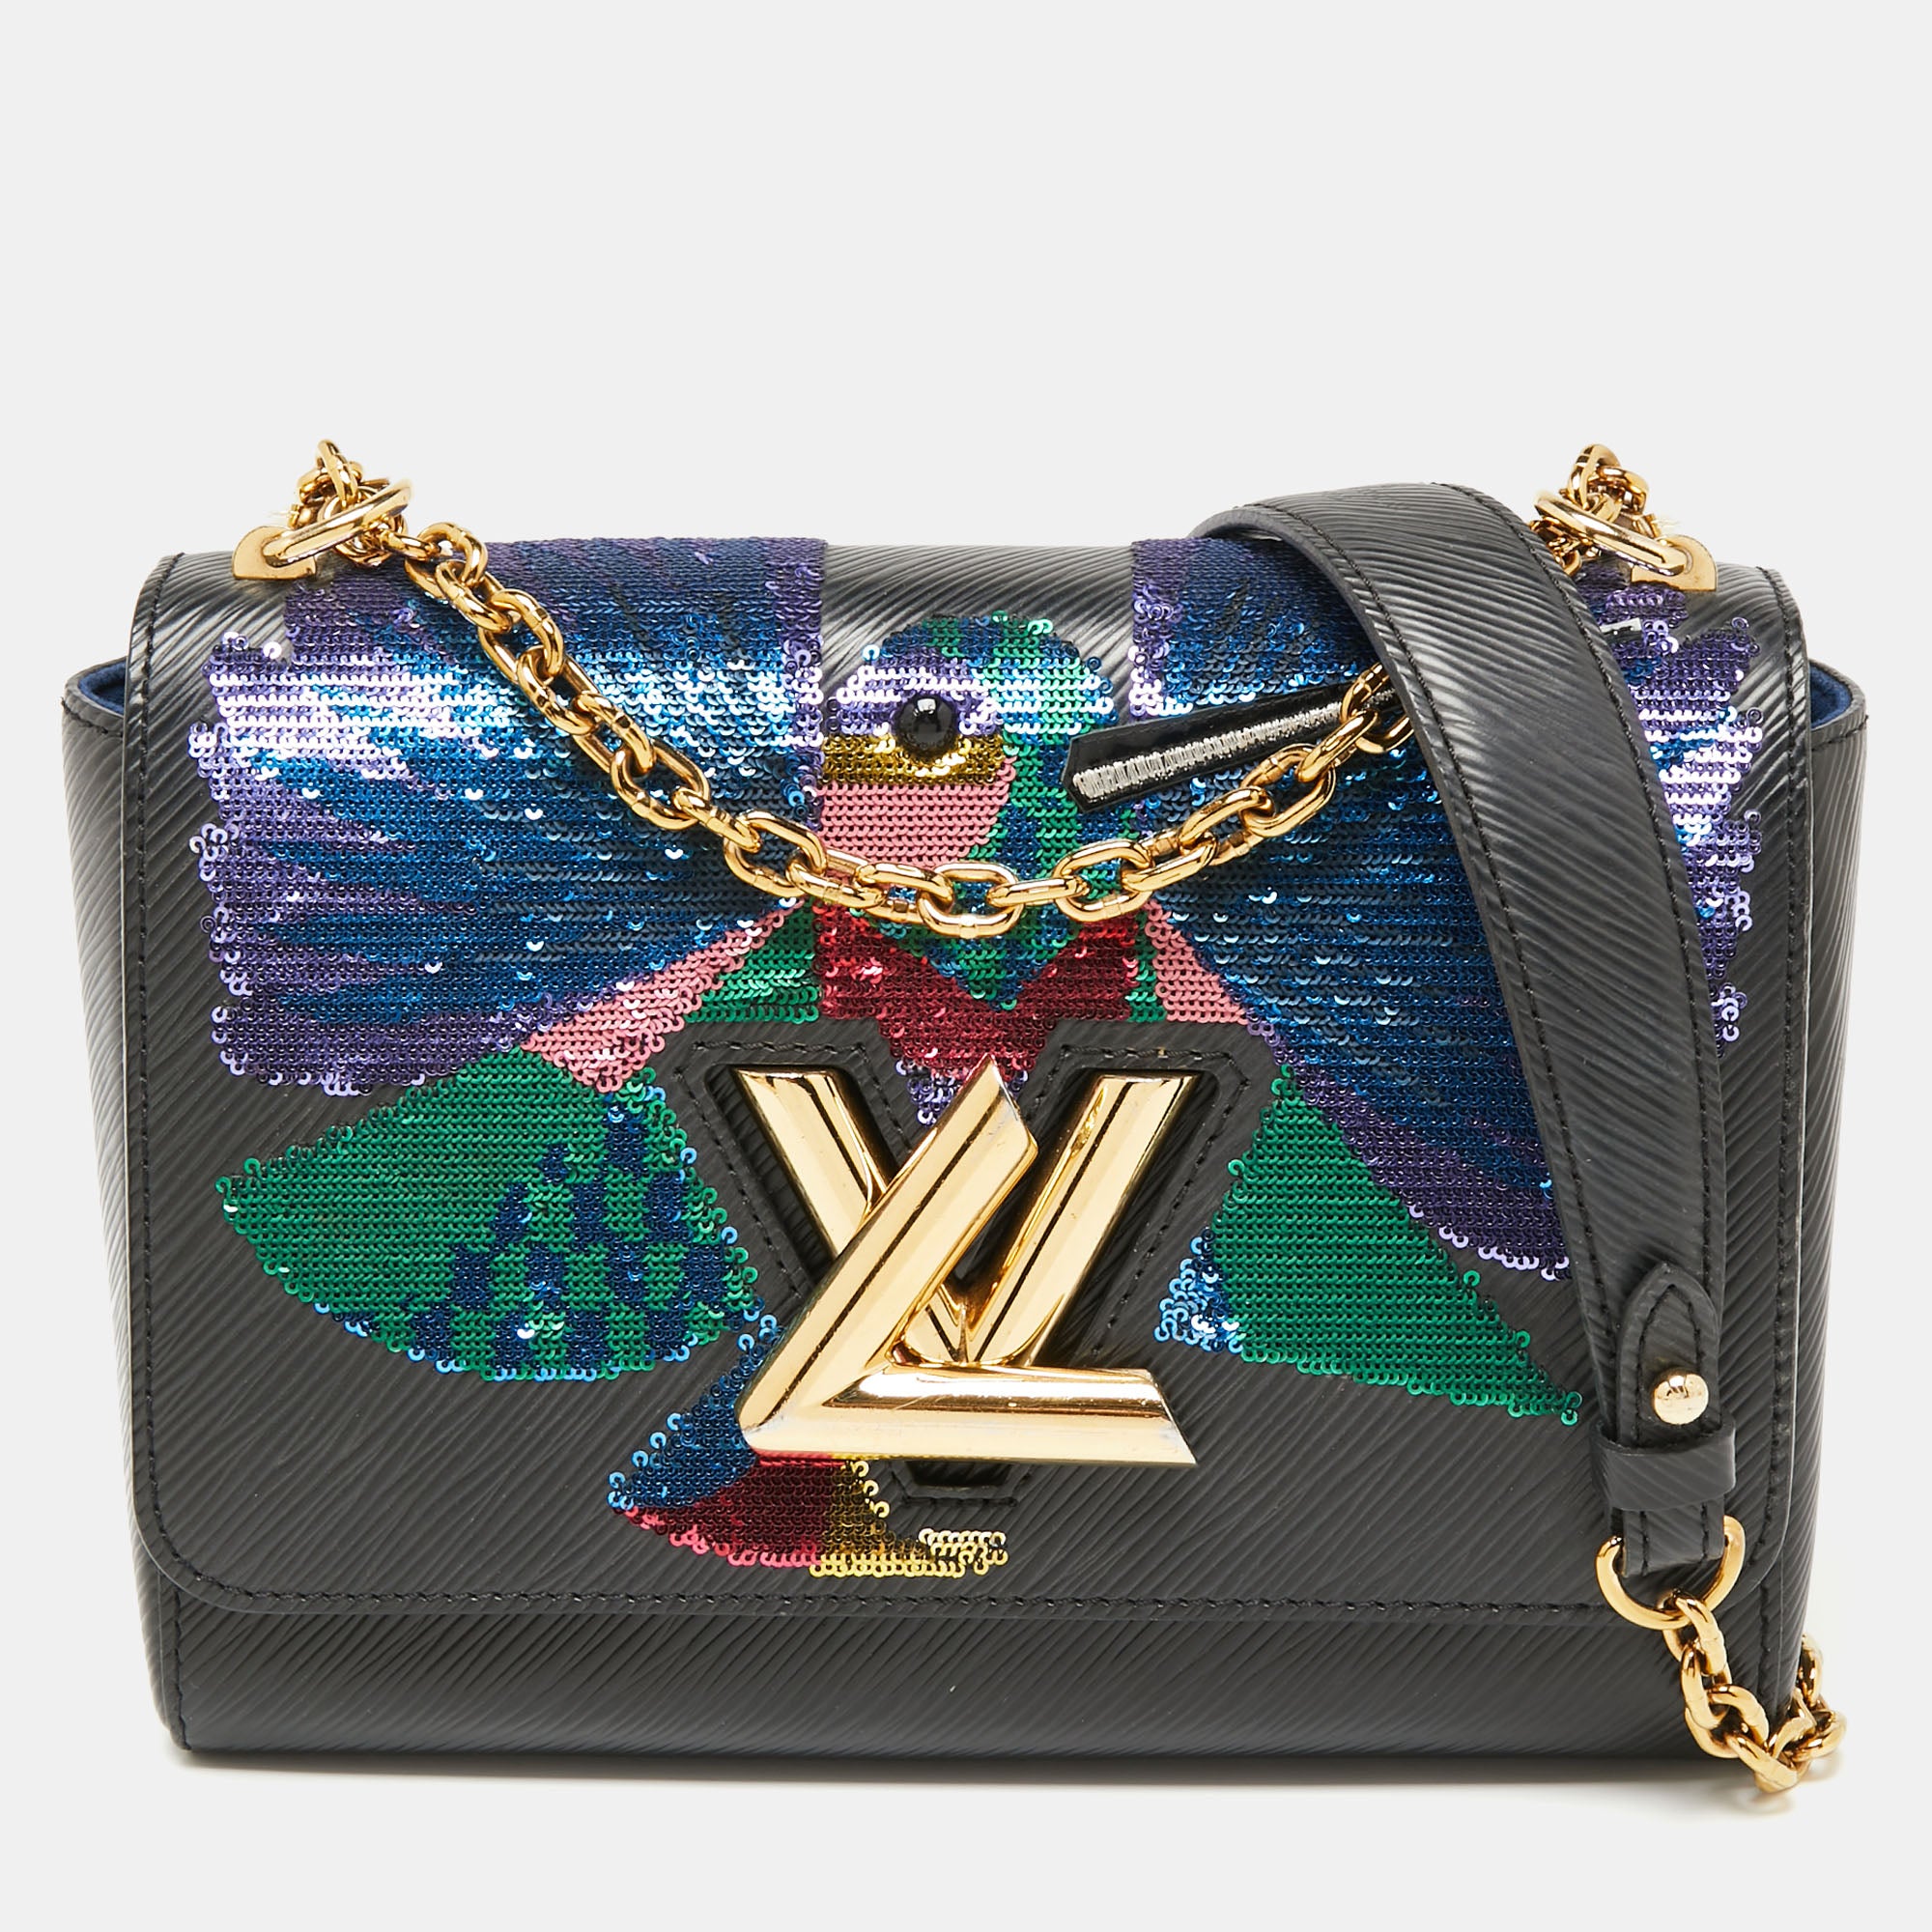 Louis Vuitton Twist Handbag Epi Leather with Sequins MM